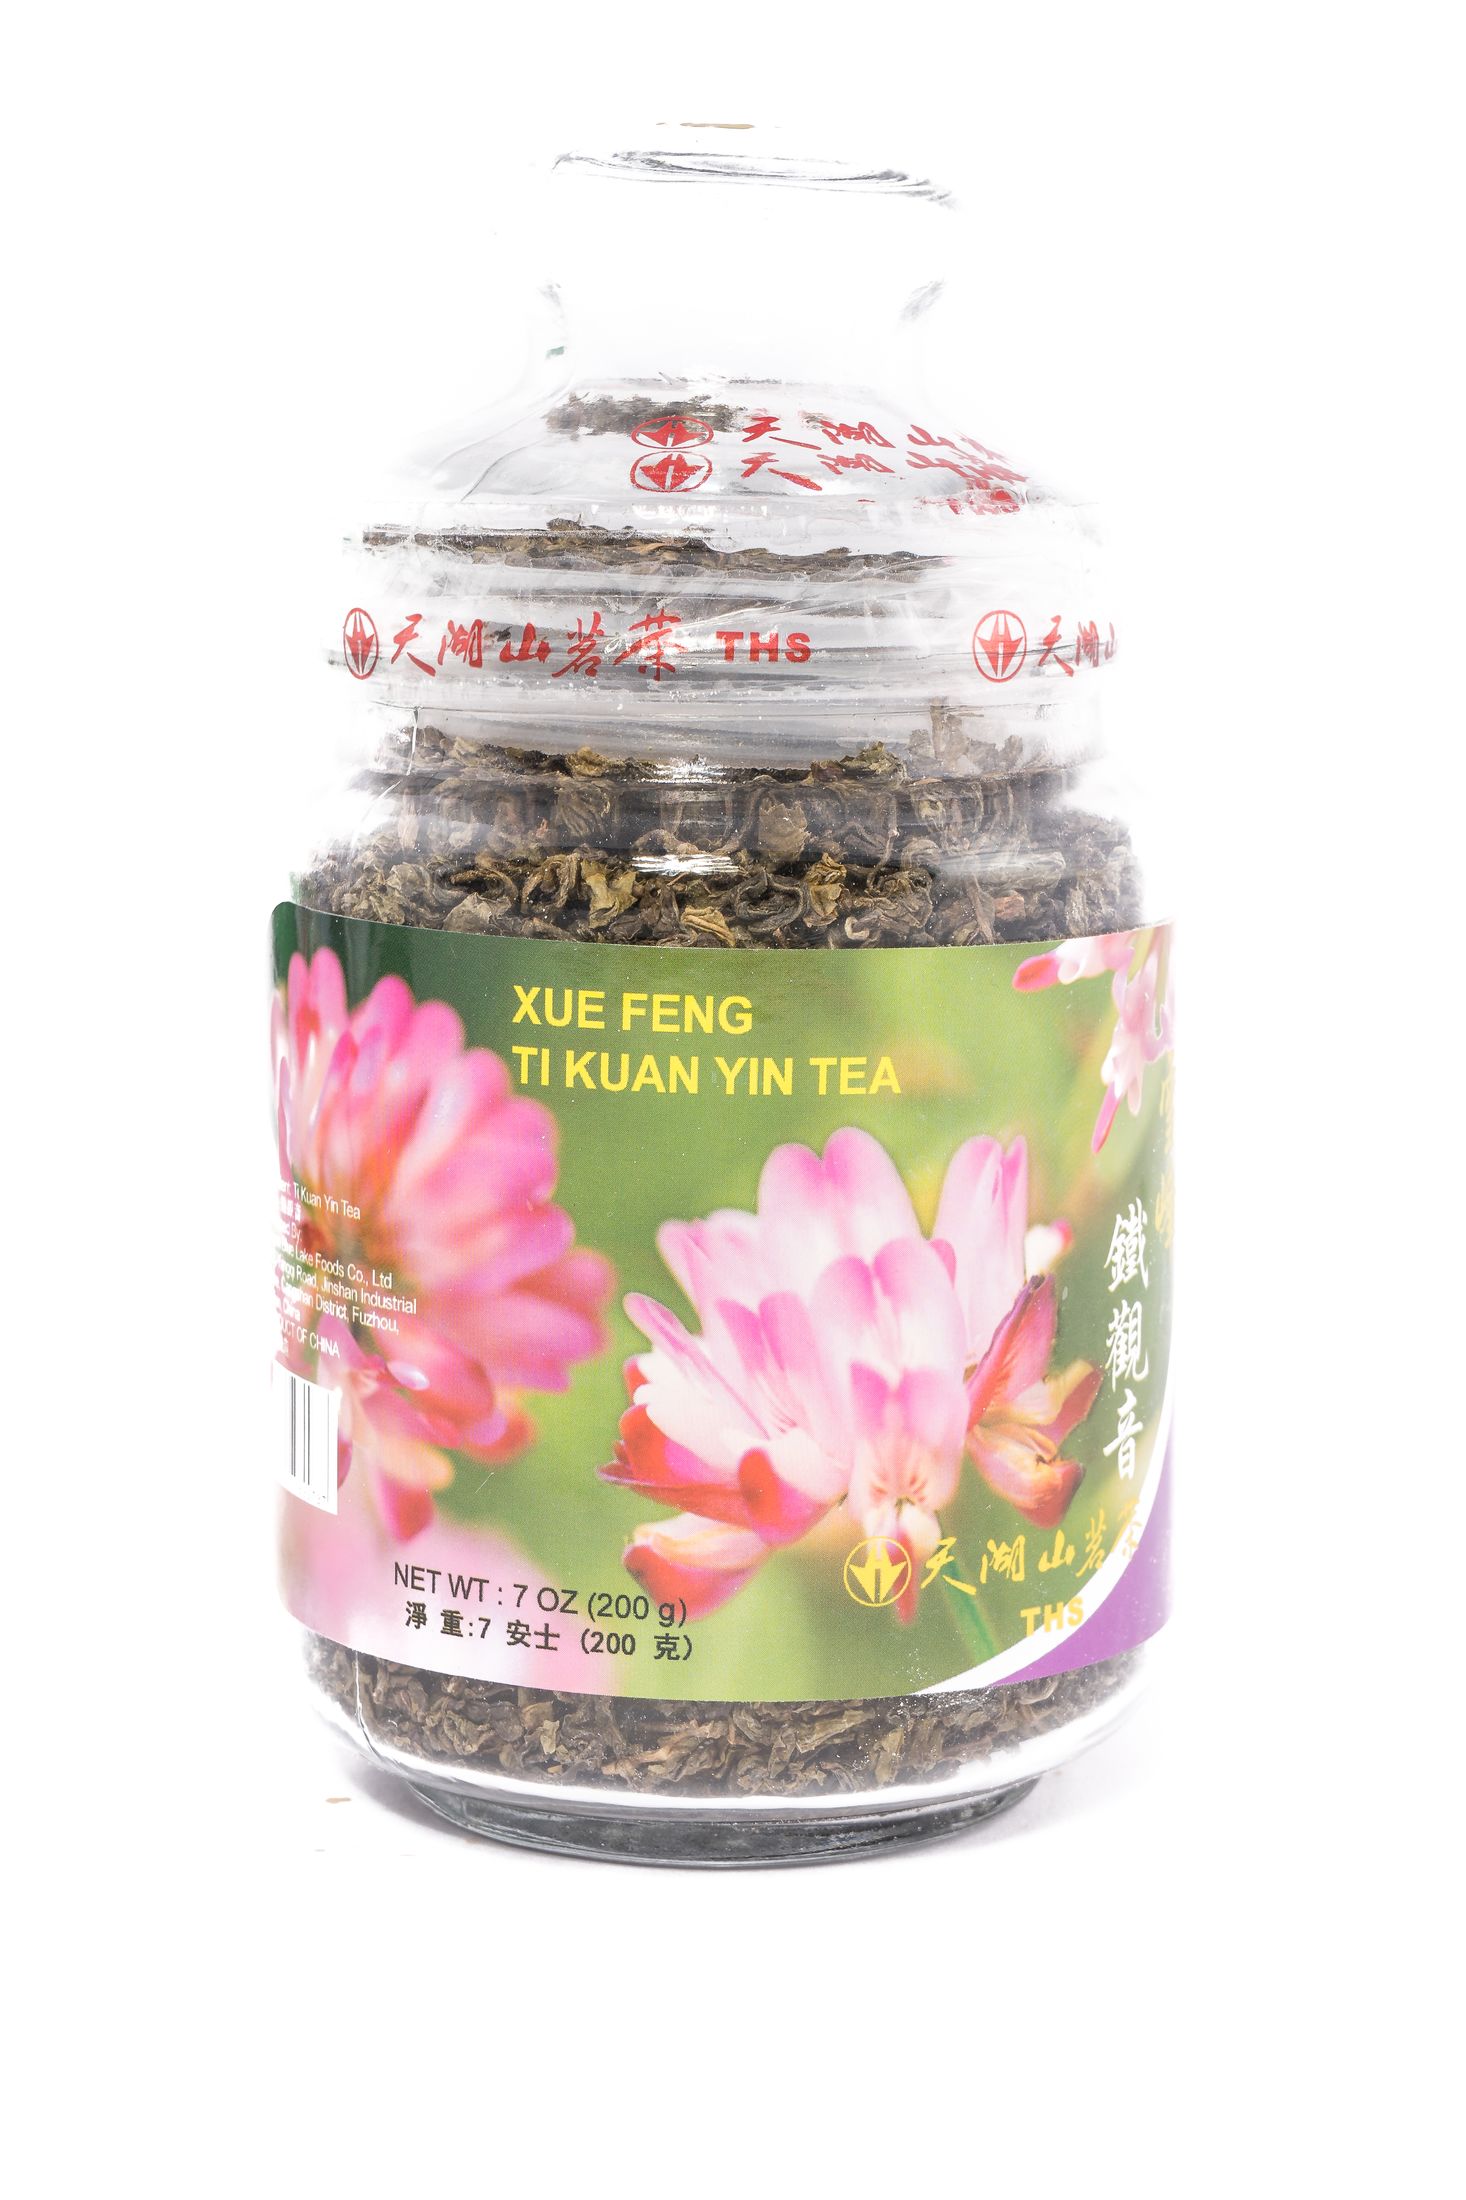 Tian Hu Shan Ti kuan yin tea